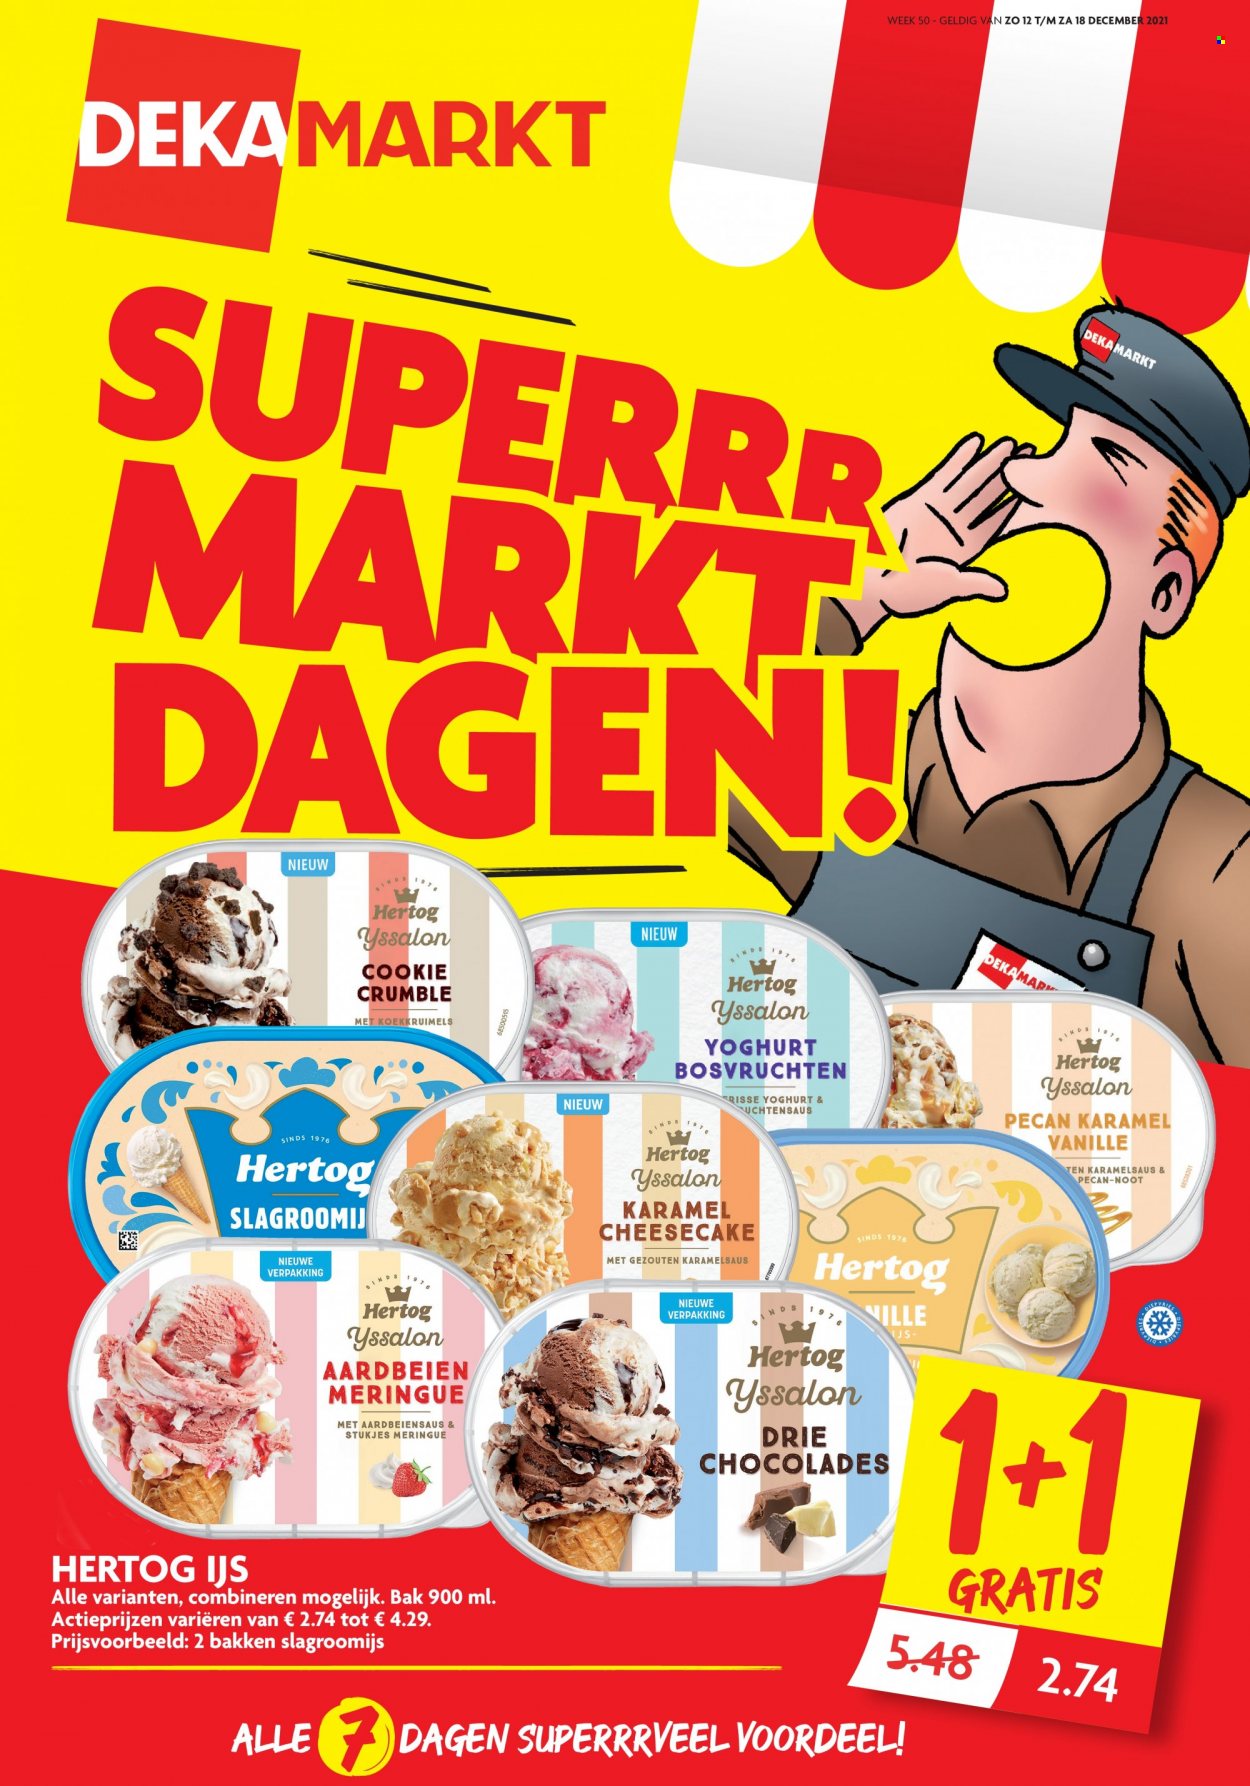 DekaMarkt-aanbieding - 12.12.2021 - 18.12.2021 -  producten in de aanbieding - aardbeien, meringue, yoghurt. Pagina 1.